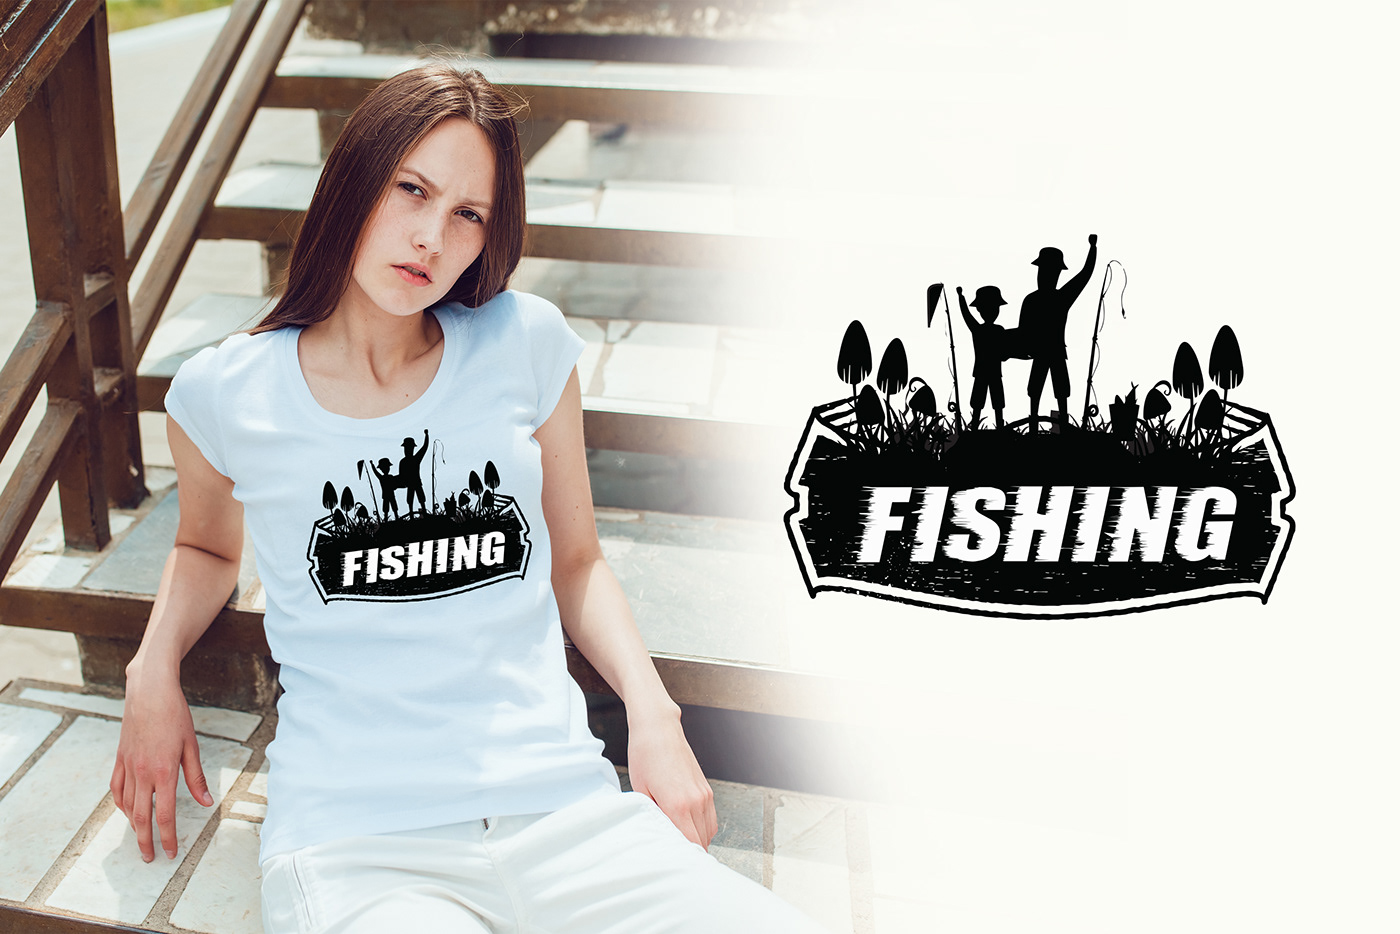 Fisherman fishing t shirt fishing t-shirt fishing t-shirt design fishing tshir tdesgn t-shirt T-Shirt Design t-shirts tshirt Tshirt Design